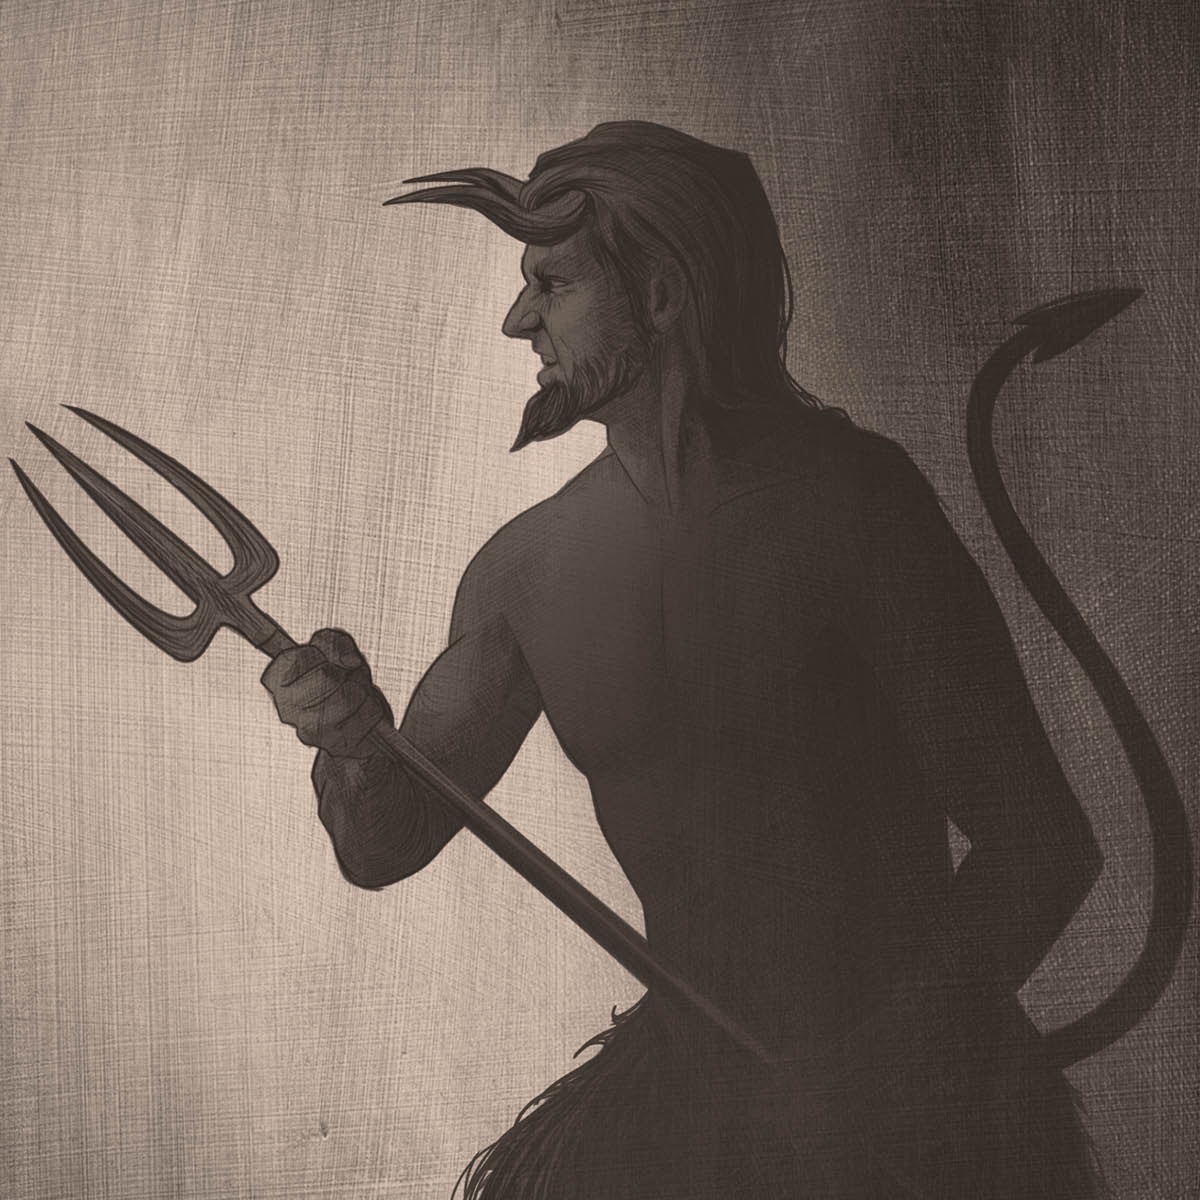 Uma representação popular do Diabo como sendo uma criatura que parece um bode, com chifres, rabo e um garfo.